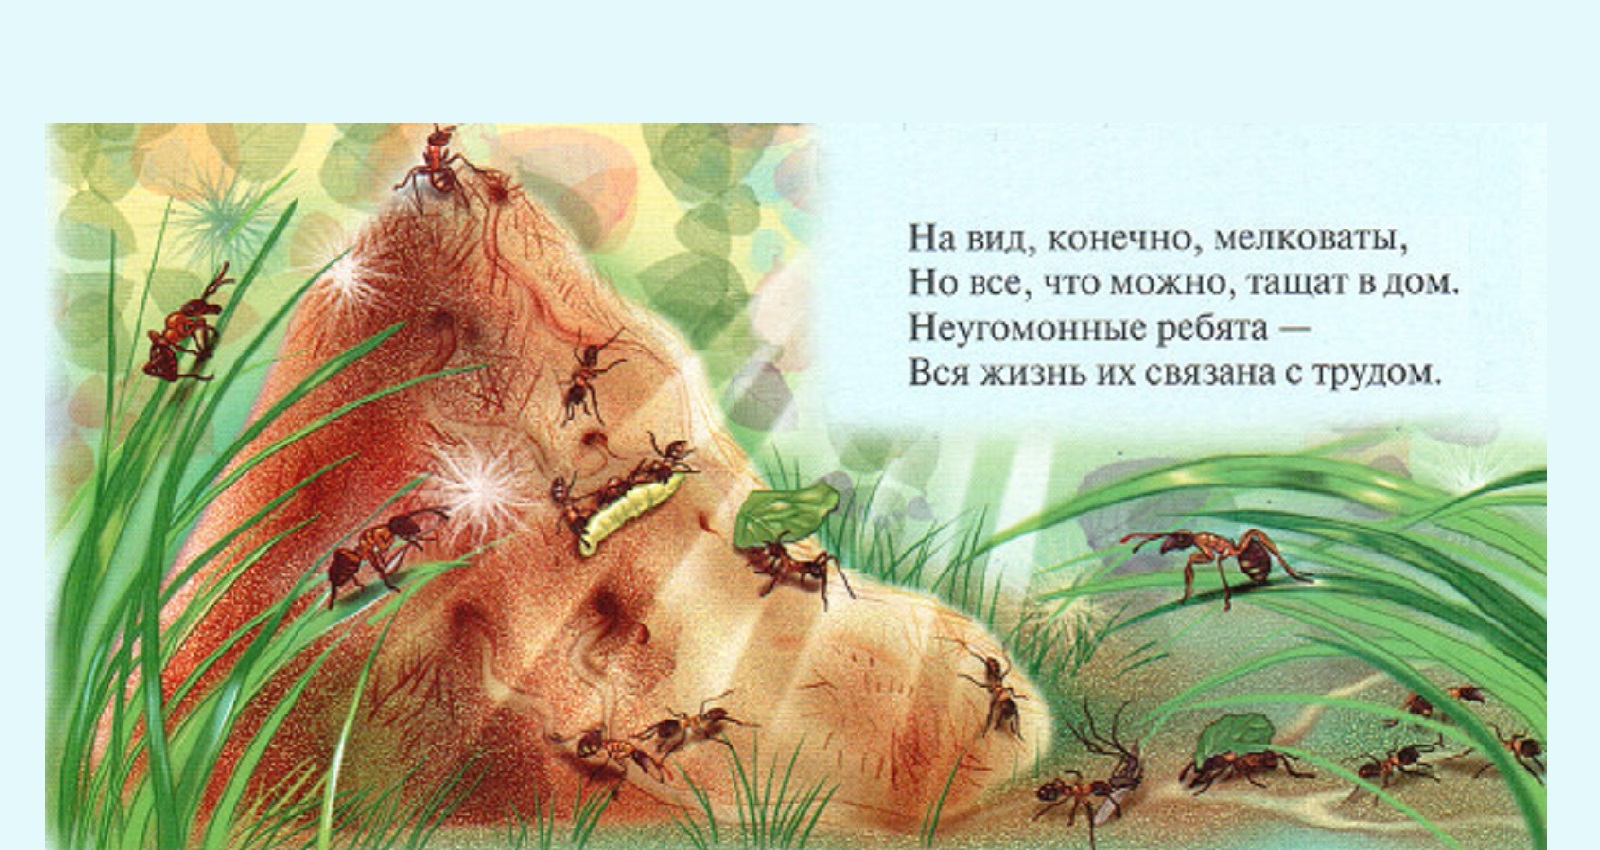 Муравей невелик а горы копает объяснить. Загадка про муравья для детей. Загадка про муравья. Загадка про муравьев для детей. Загадка про муравьев.